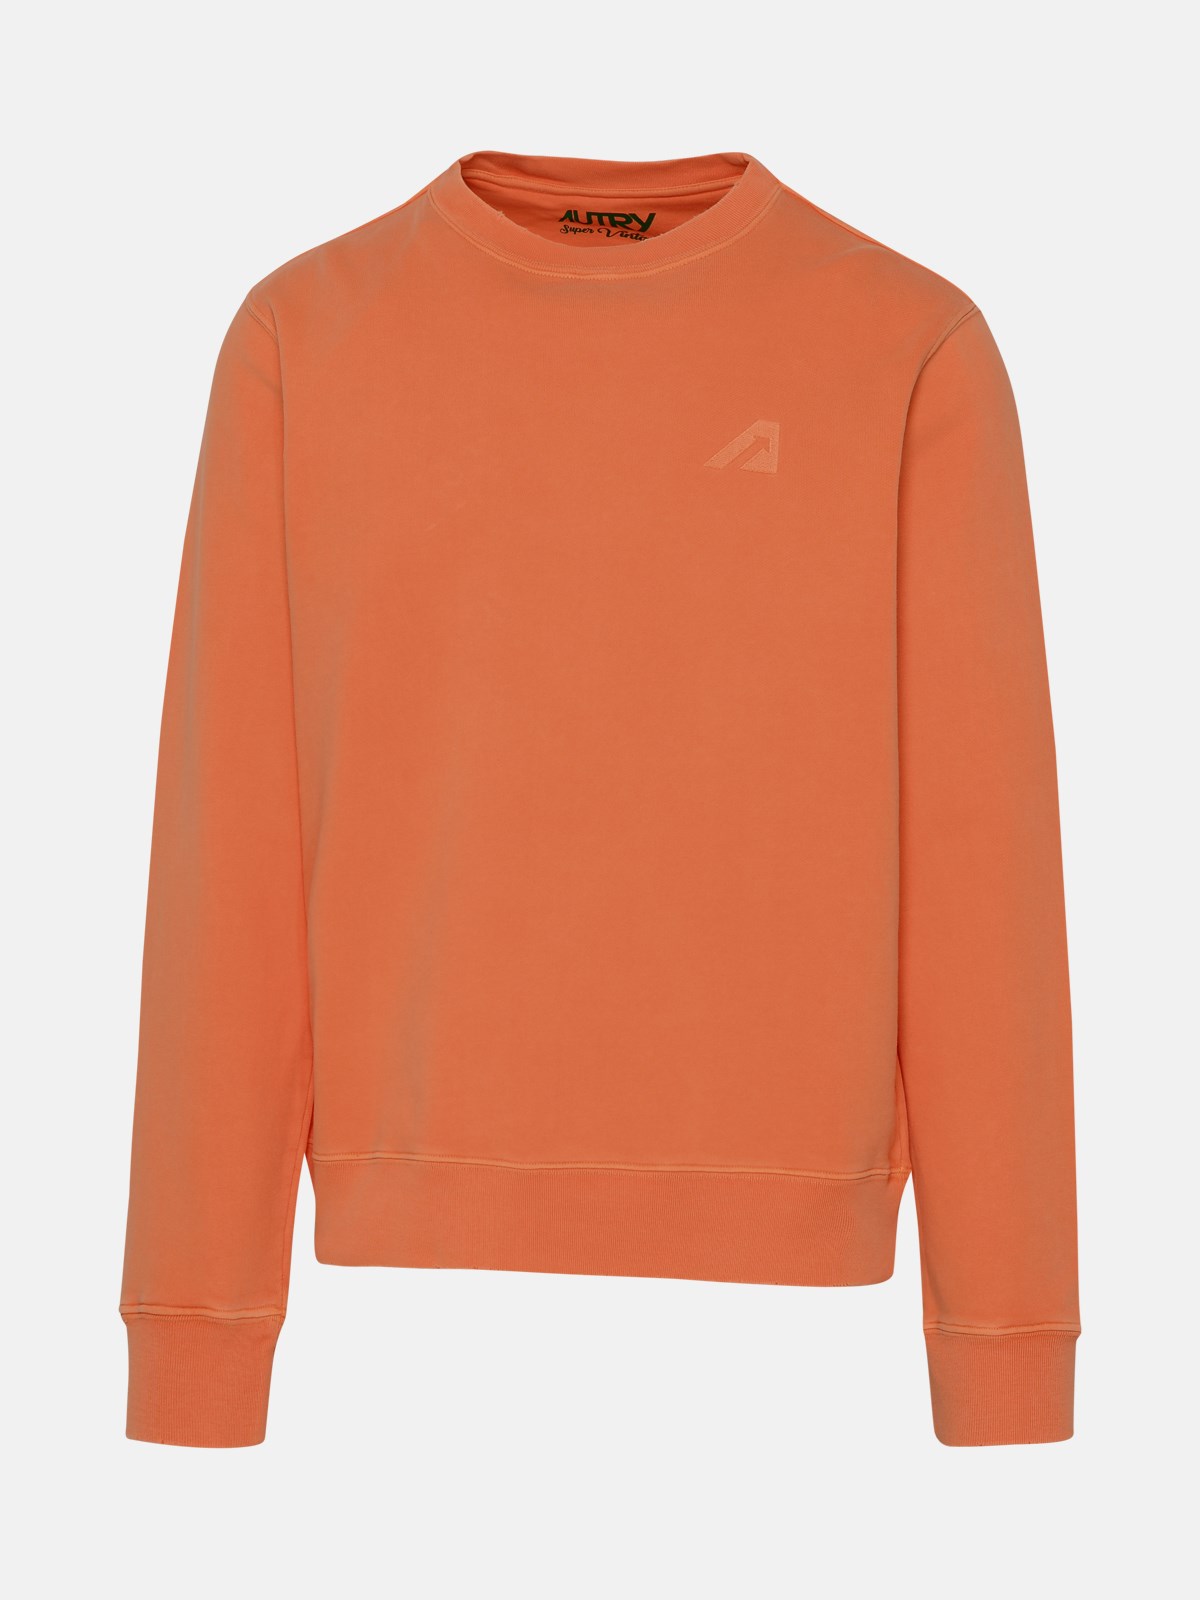 Autry Kids' Orange Cotton Sweatshirt